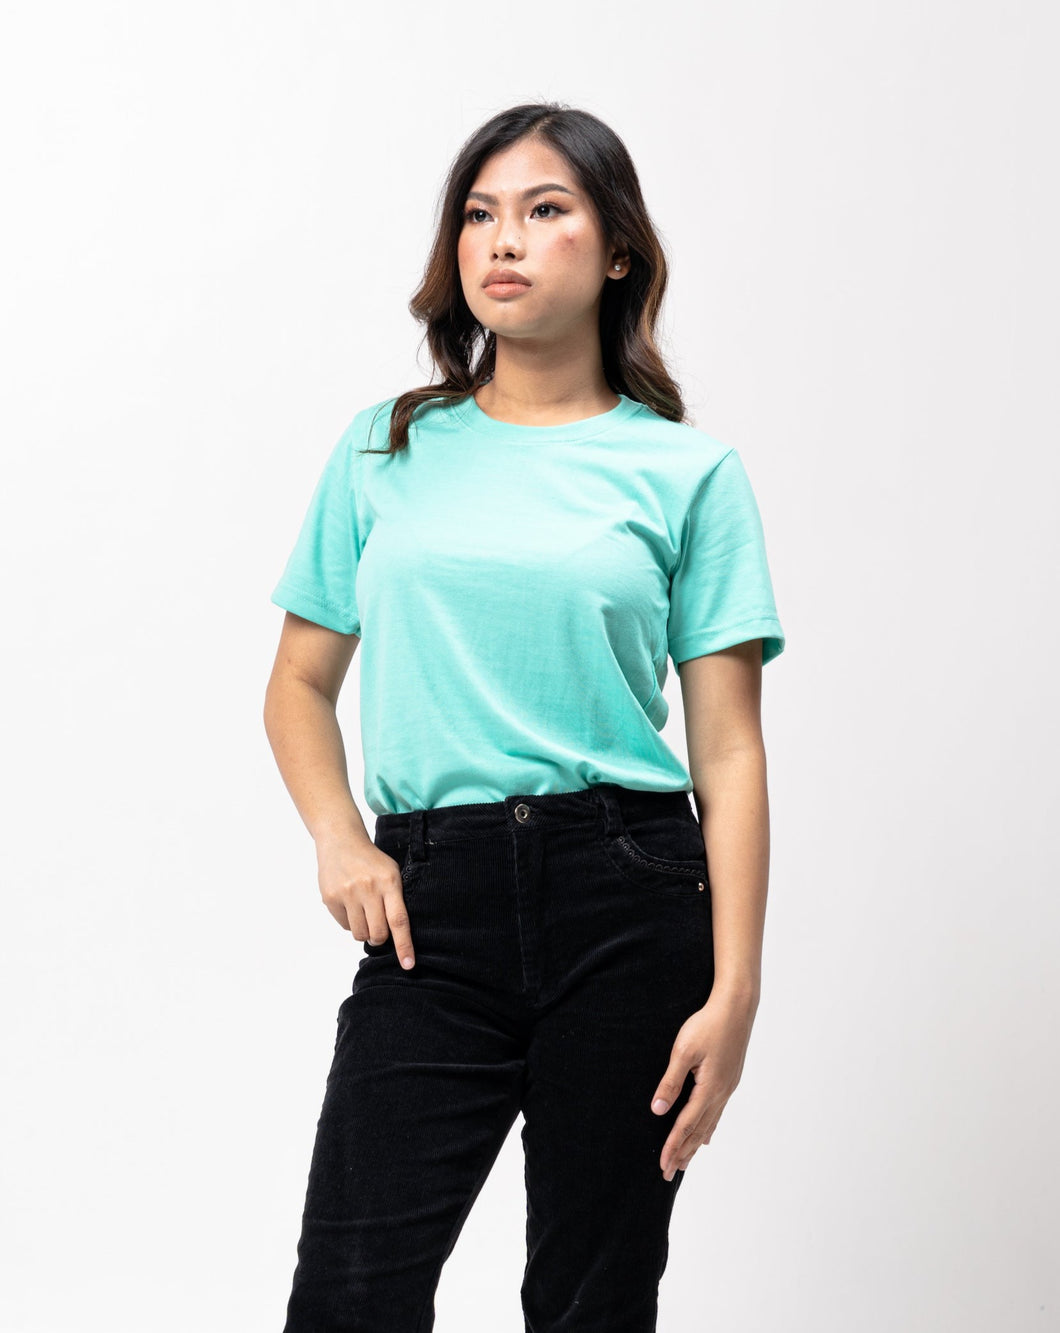 Ice Green Sun Plain Women's T-Shirt